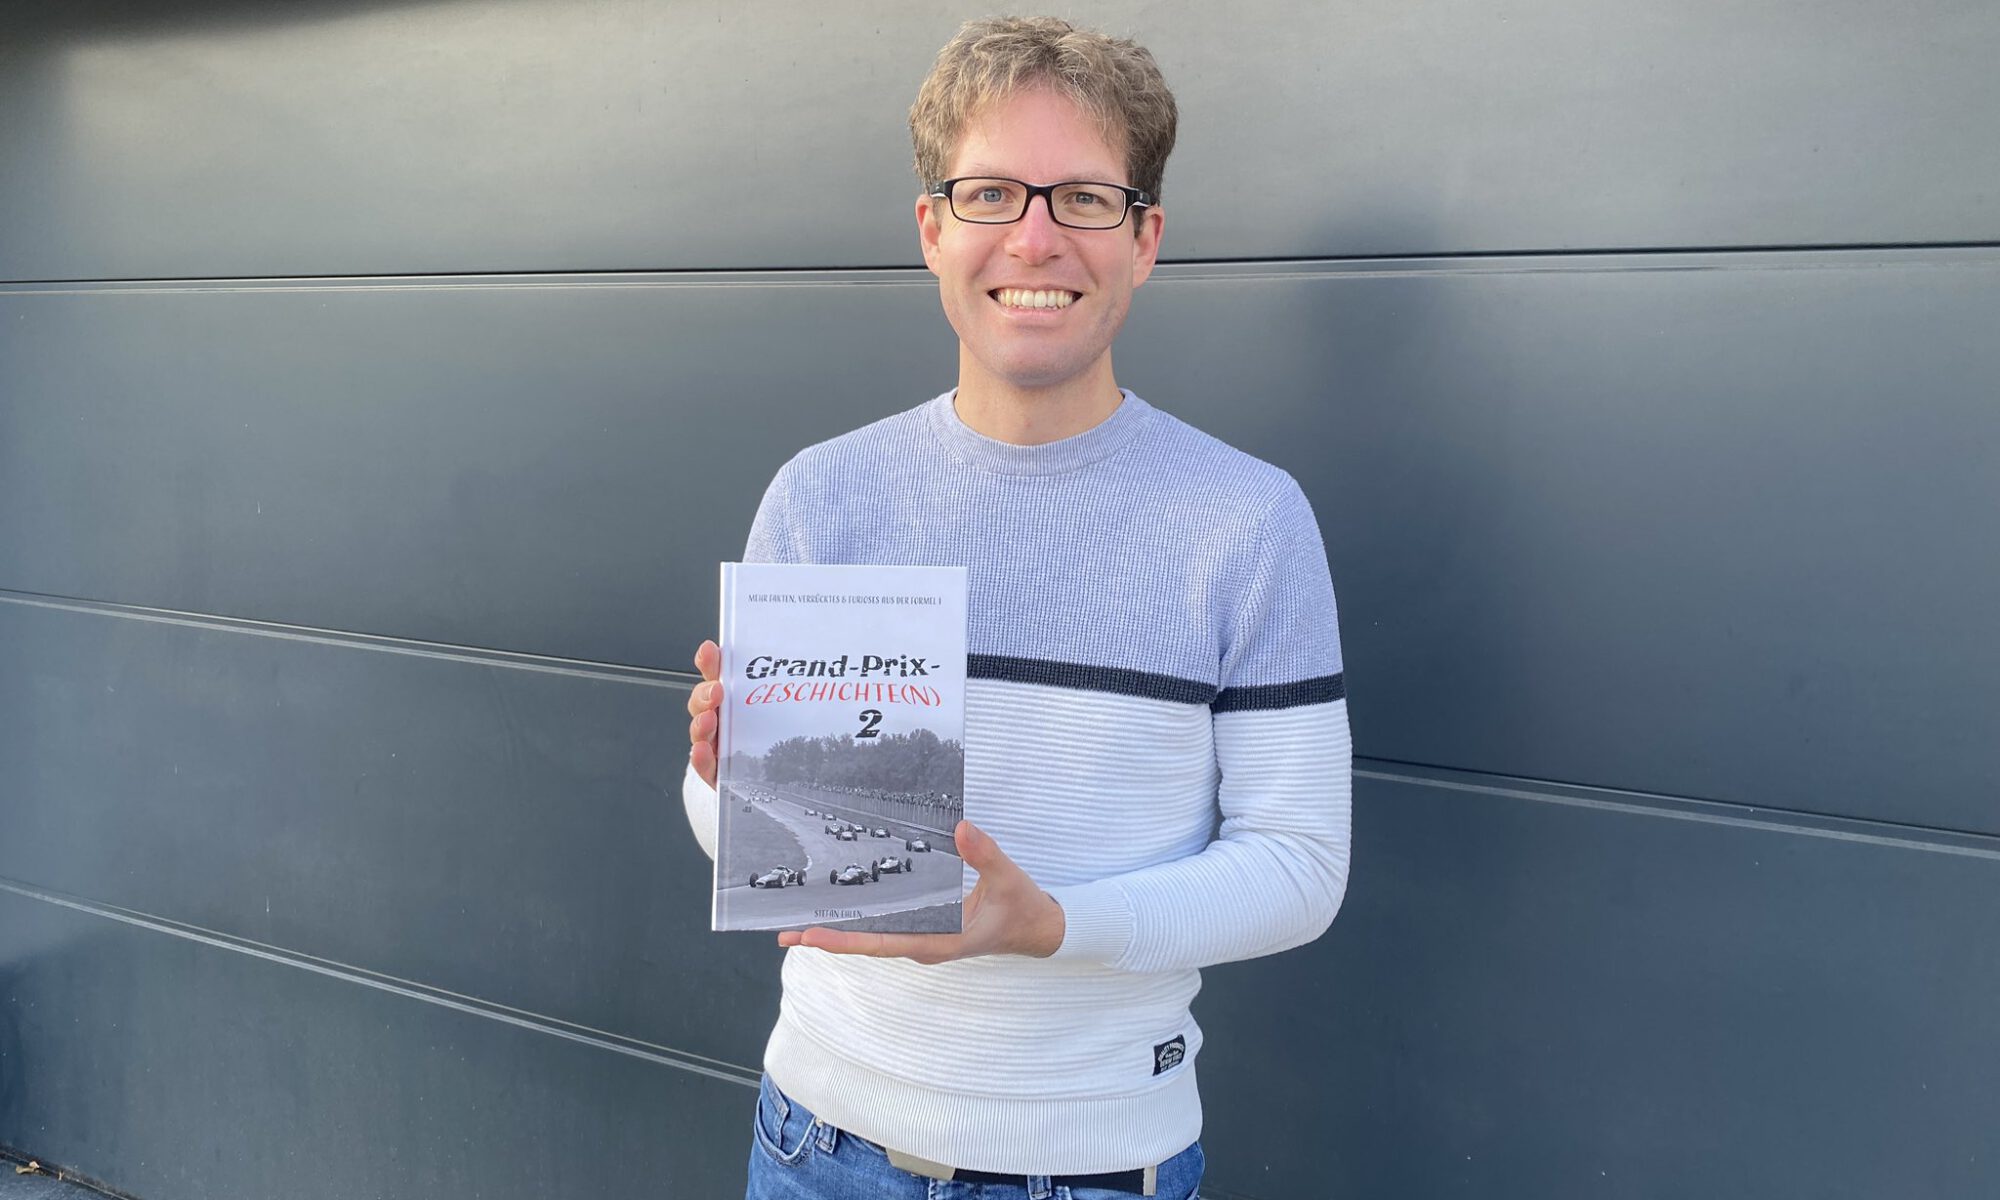 Stefan Ehlen mit seinem Formel-1-Buch "Grand-Prix-Geschichte(n) 2"